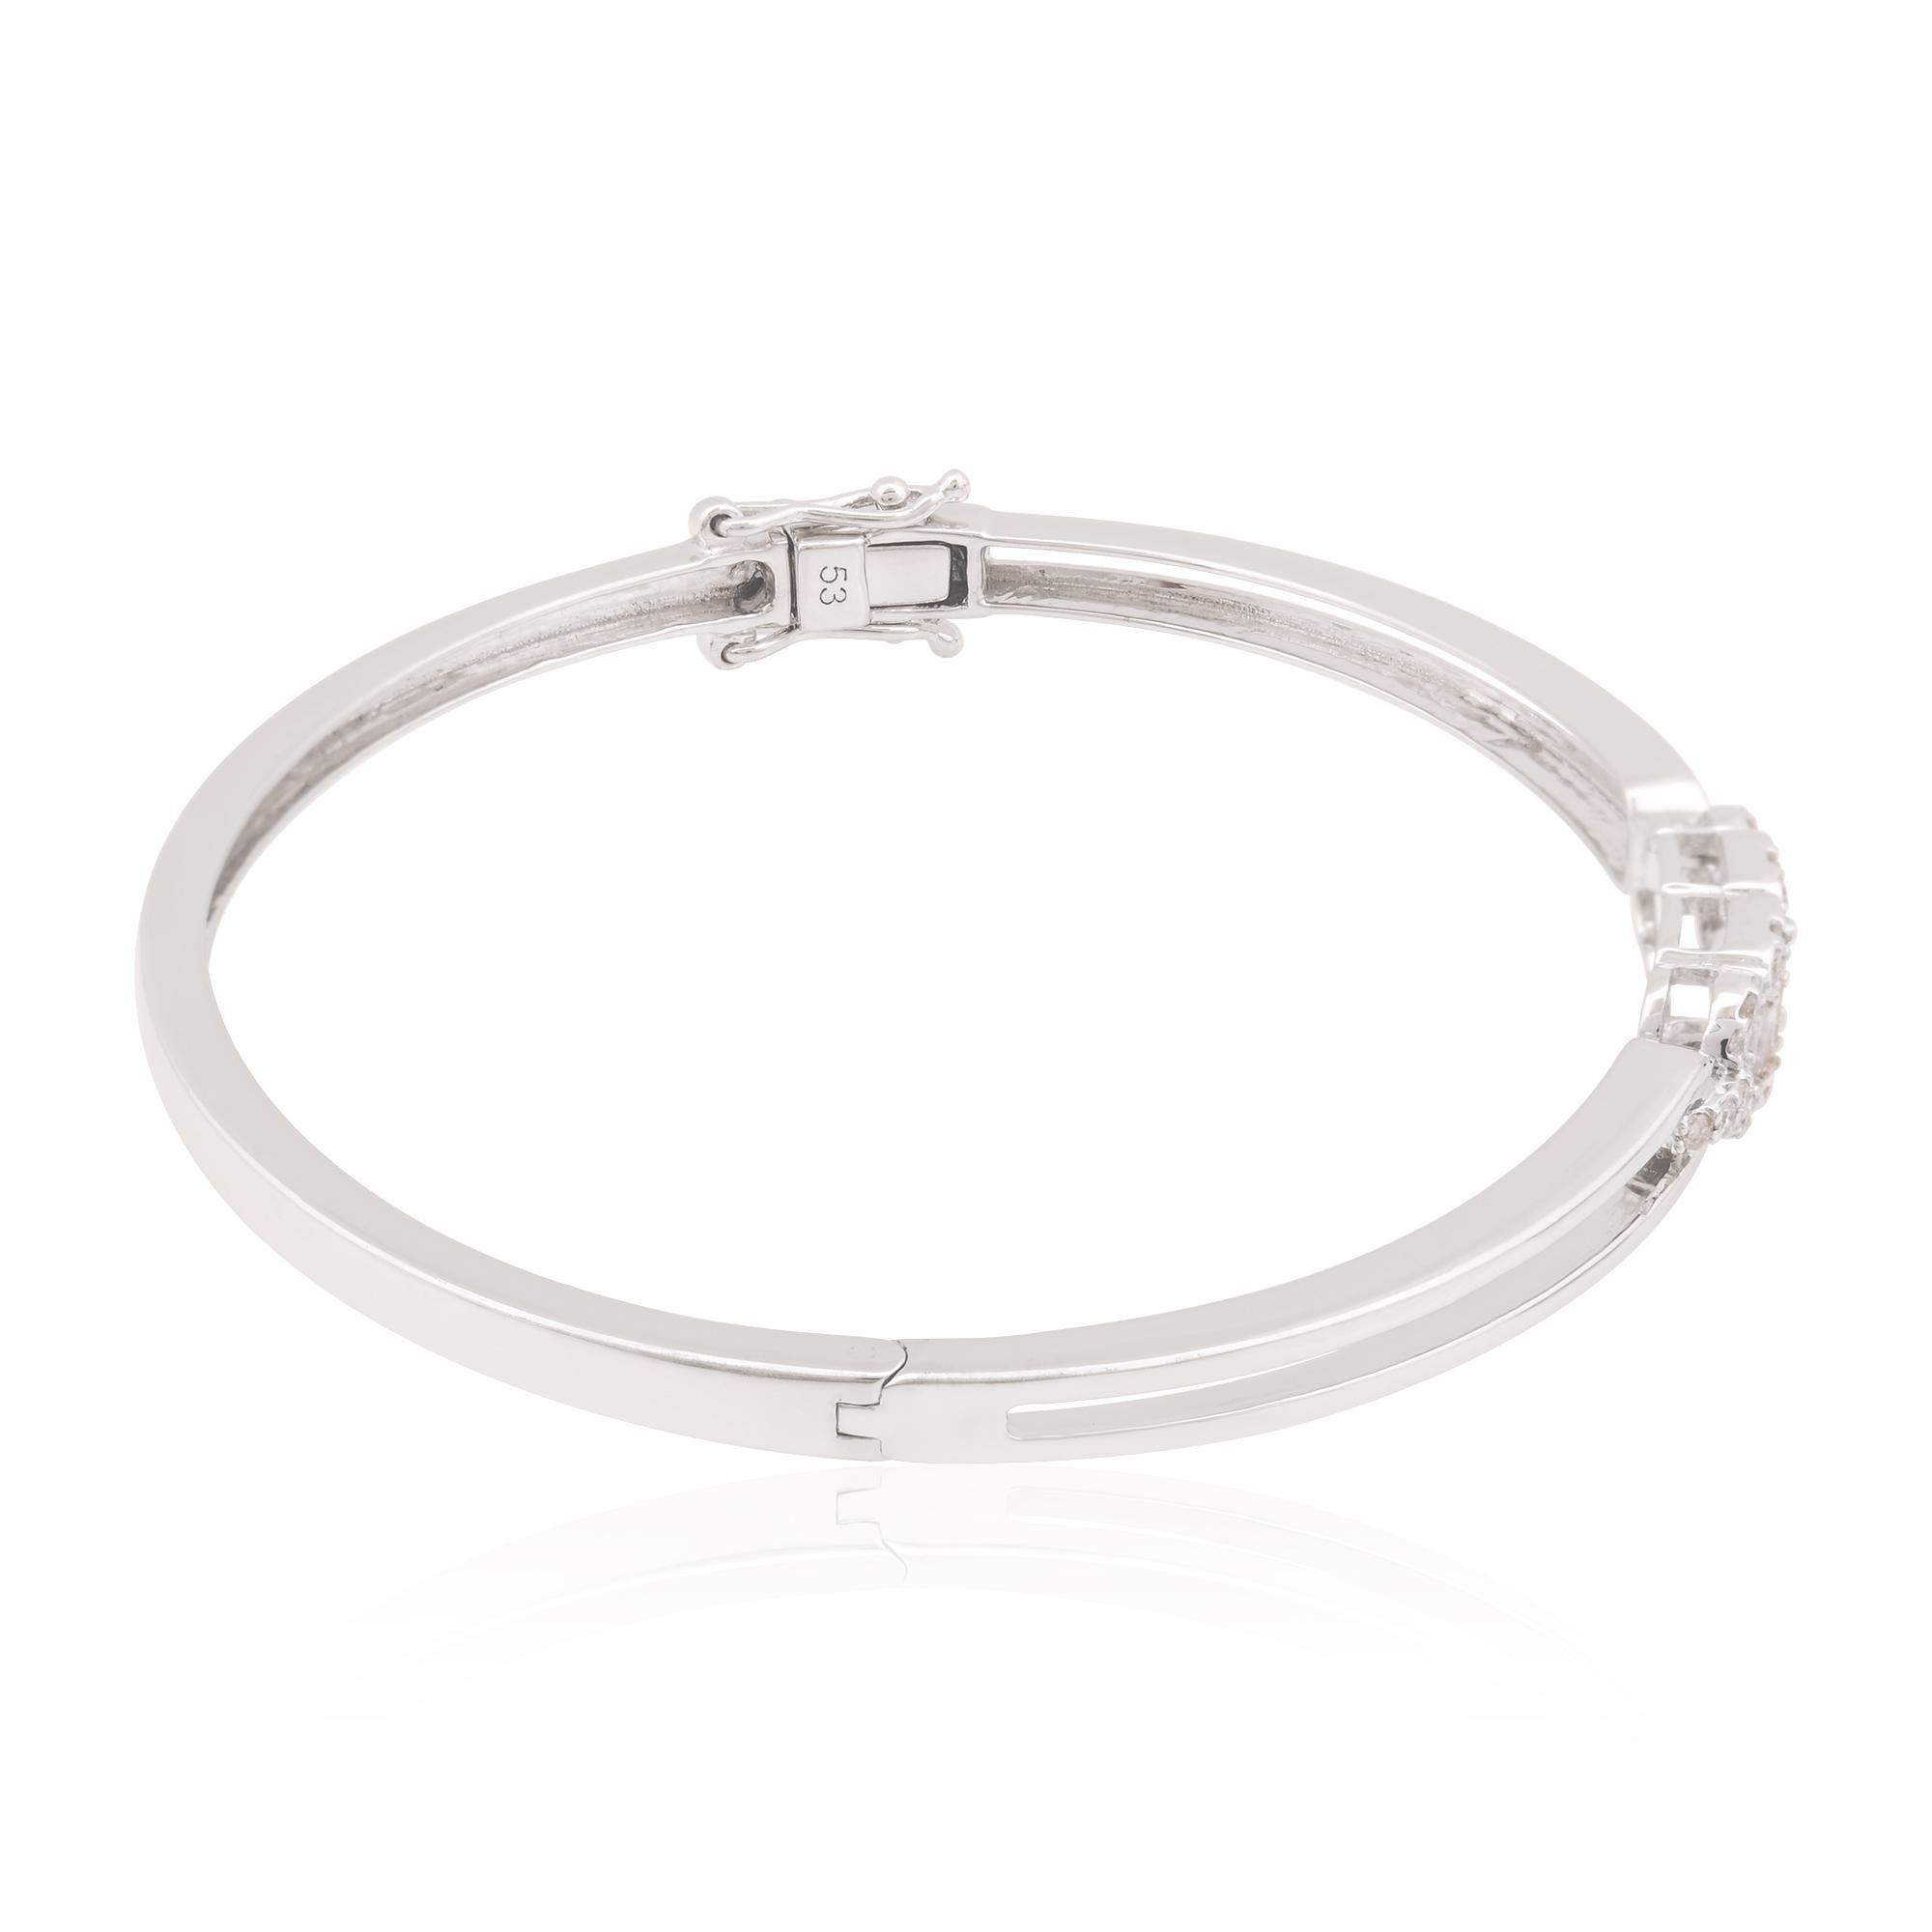 Ce bracelet en diamant baguette est l'accessoire idéal pour les occasions formelles et décontractées. Il rehausse sans effort n'importe quelle tenue, en y ajoutant une touche d'éclat et de raffinement. C'est un symbole d'élégance et de luxe, une